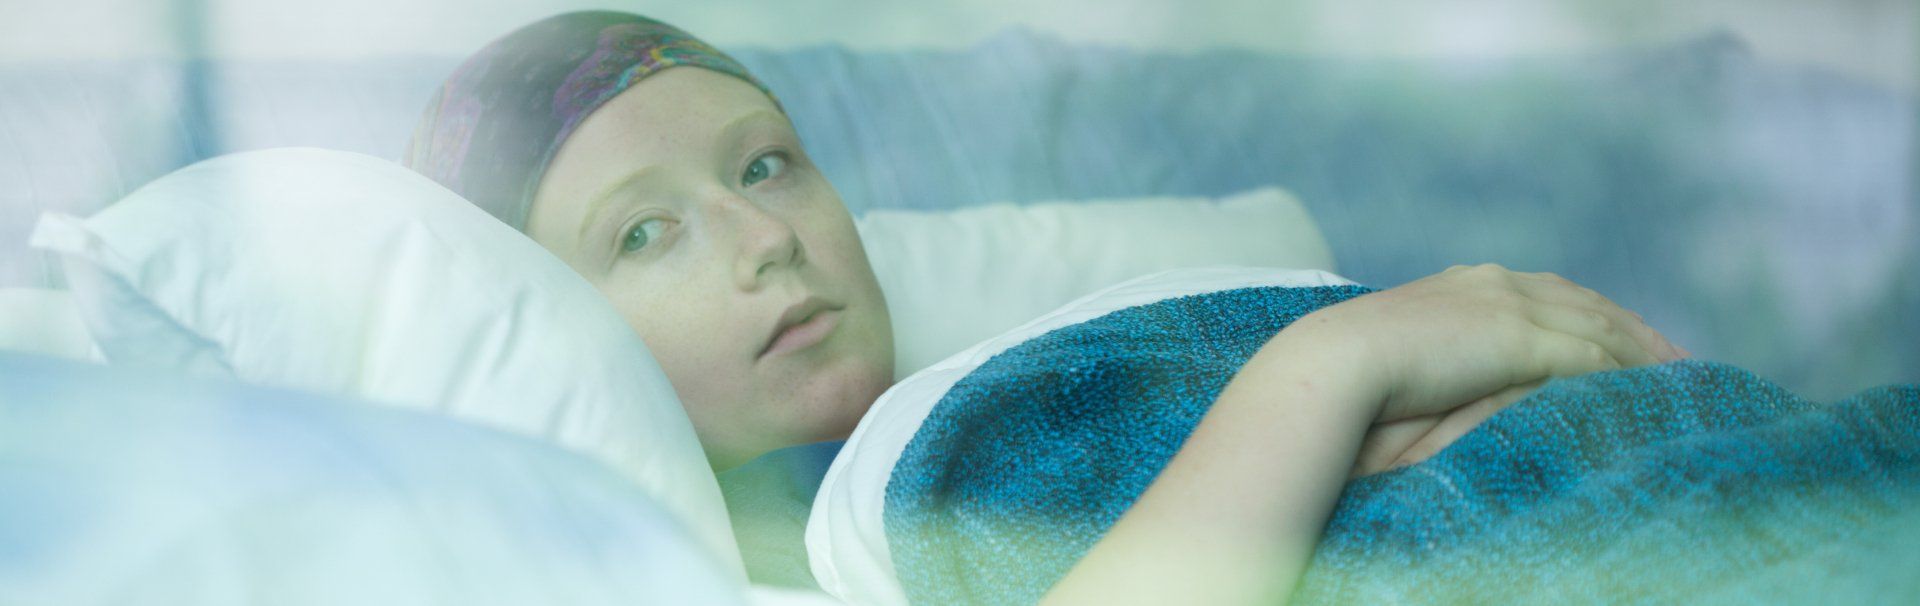 PTSS Voorbij | Blijvend herstel van PTSS en Trauma | Jonge vrouw met kanker diagnose